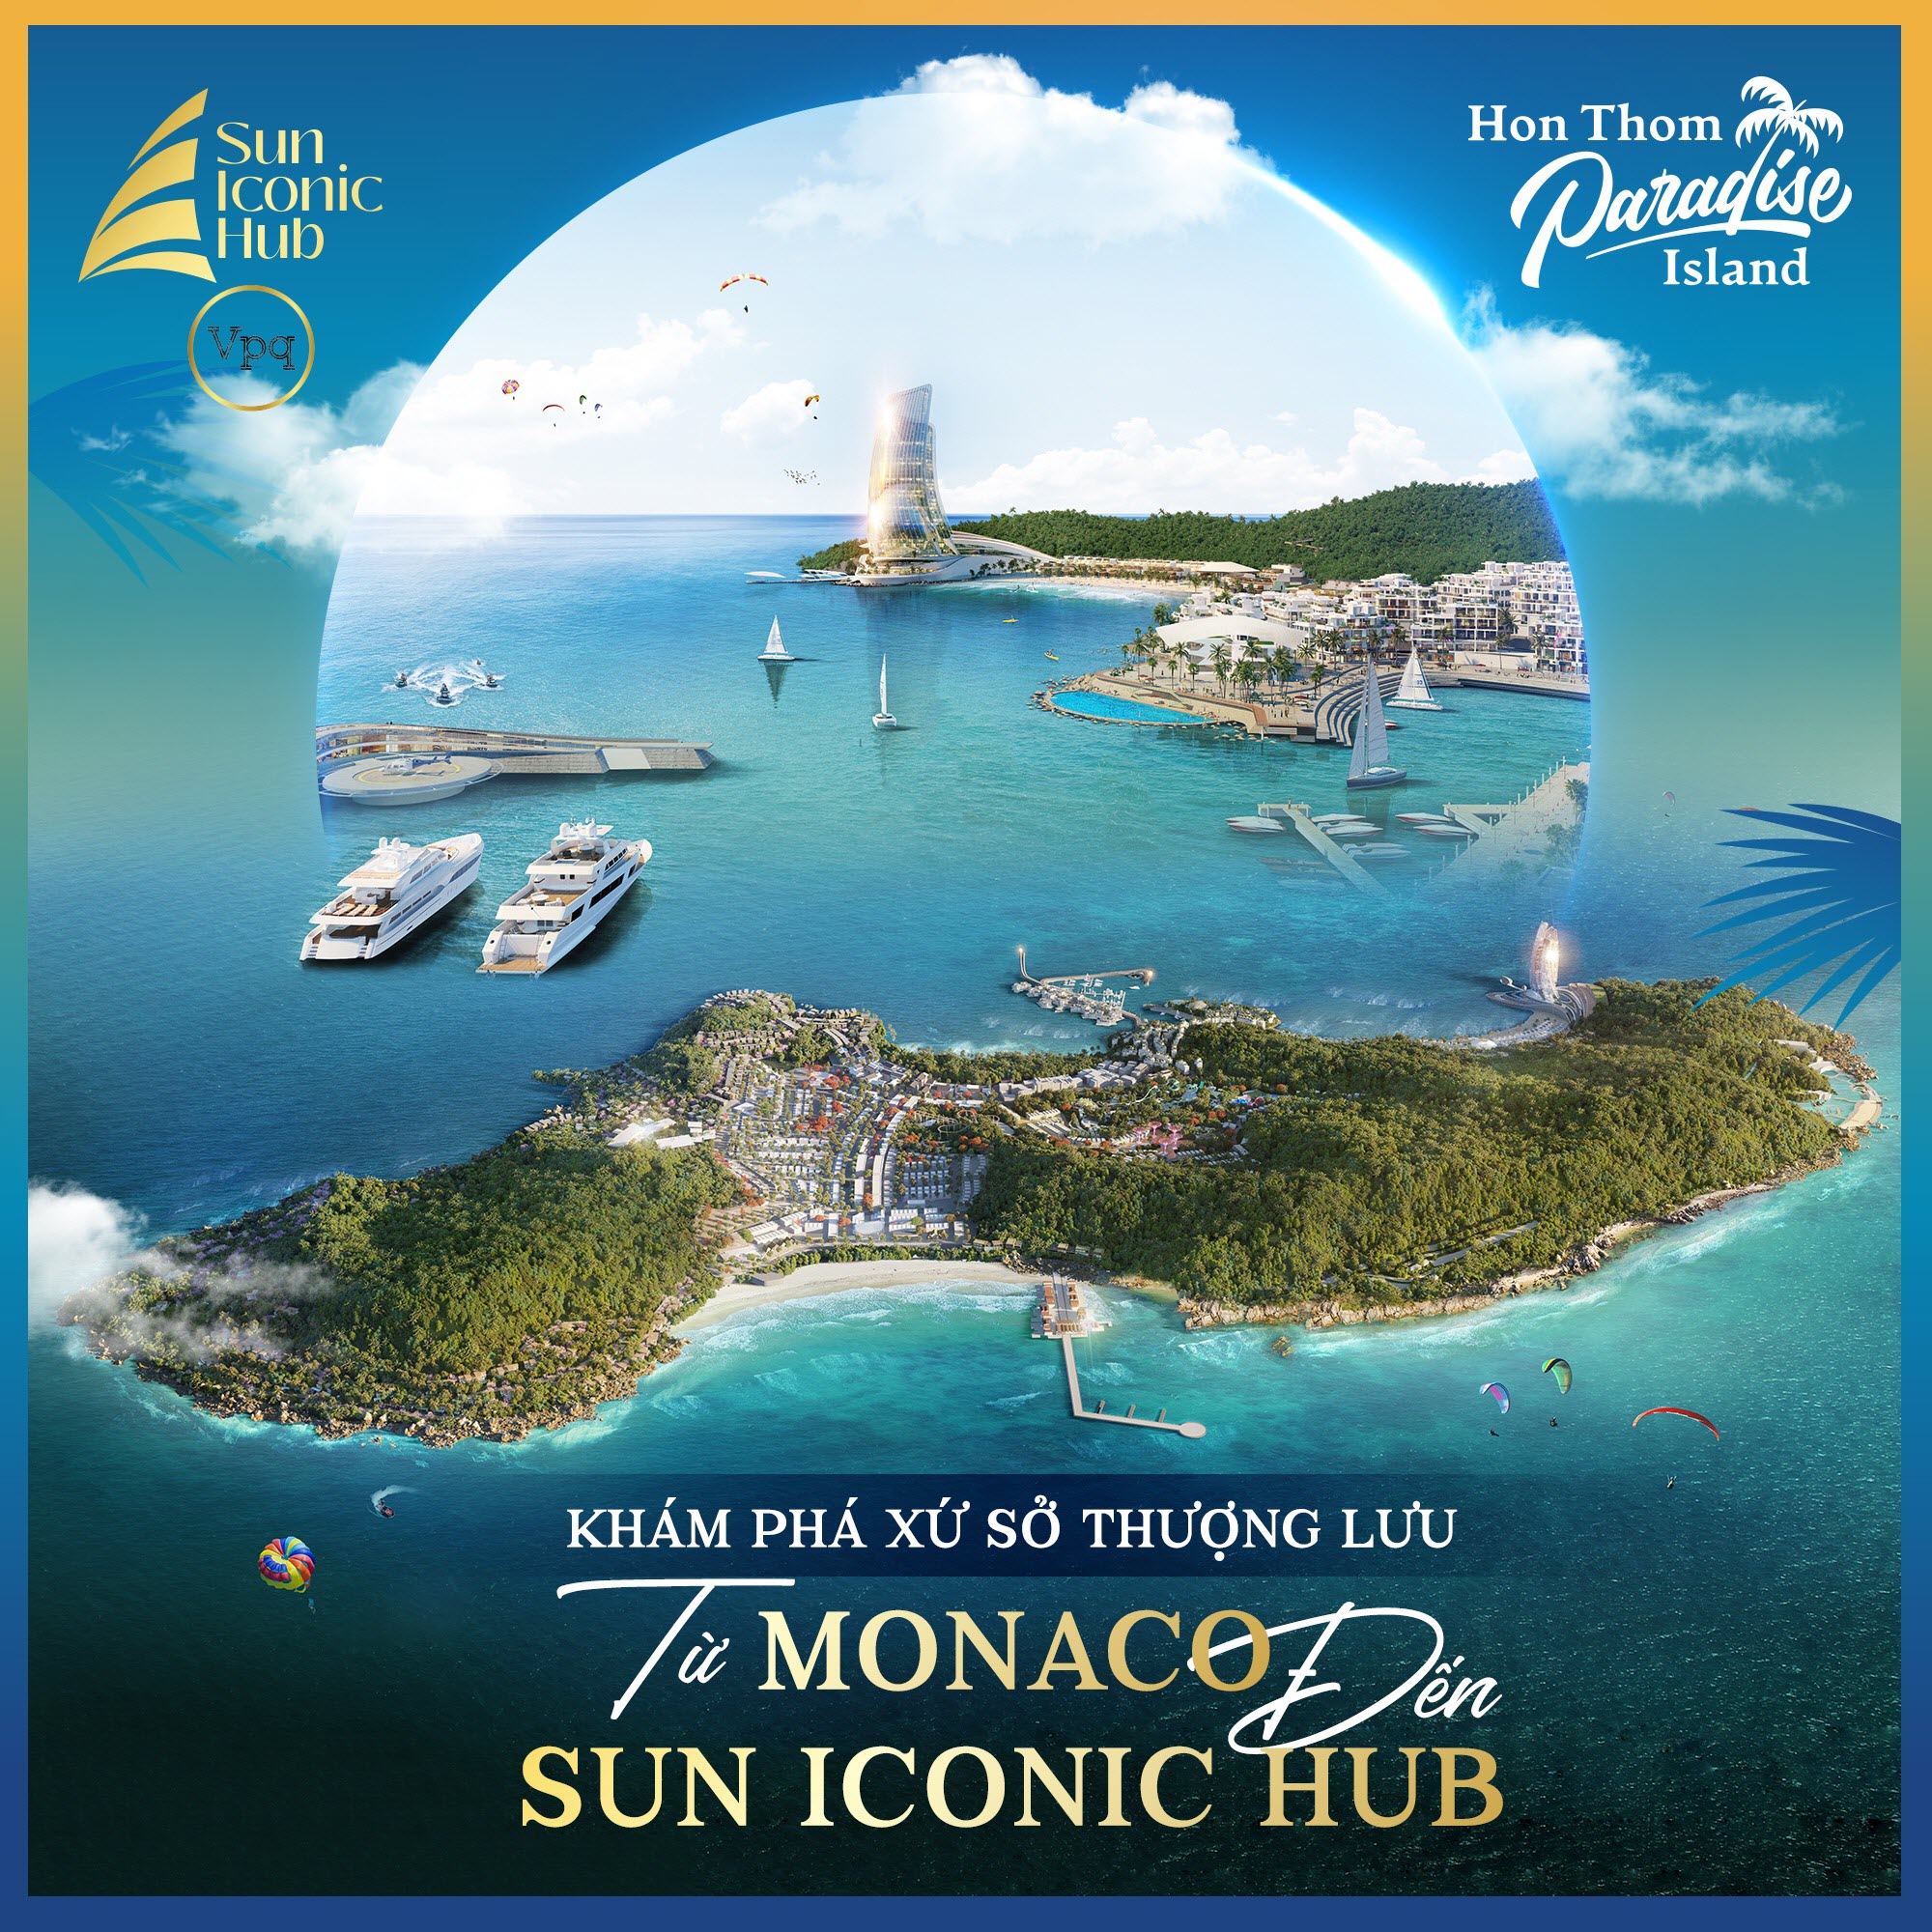 Khám phá xứ sở thương lưu Sun Iconic Hub, Hòn Thơm